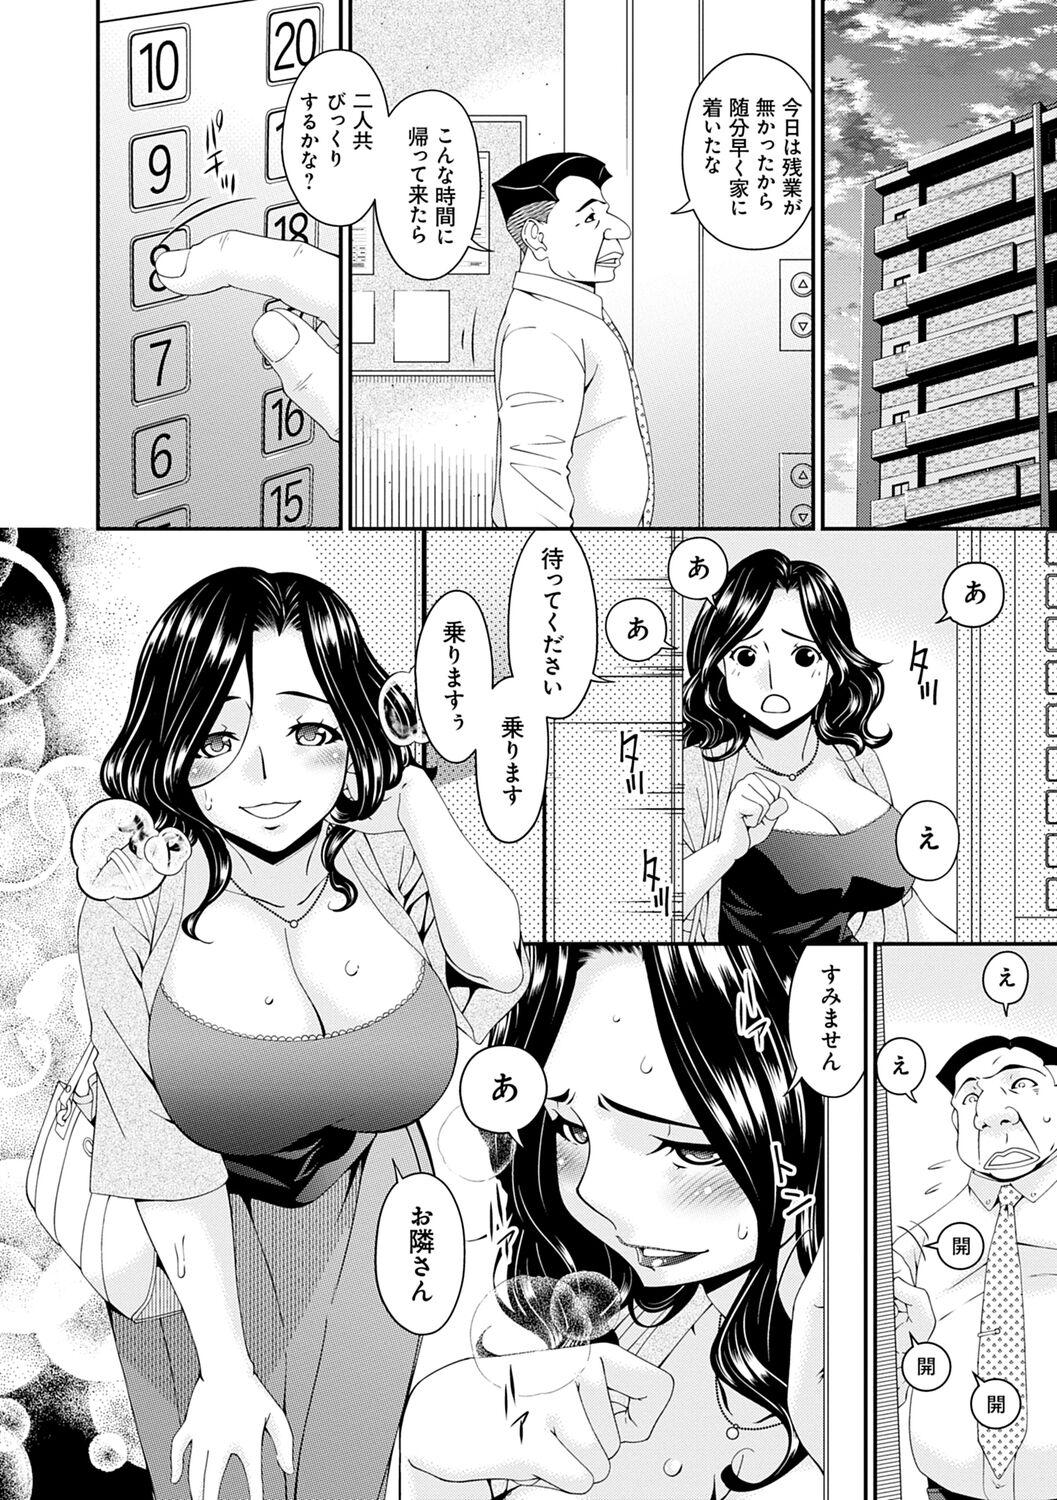 Sextape Gokujou Seikatsu Workout - Page 8